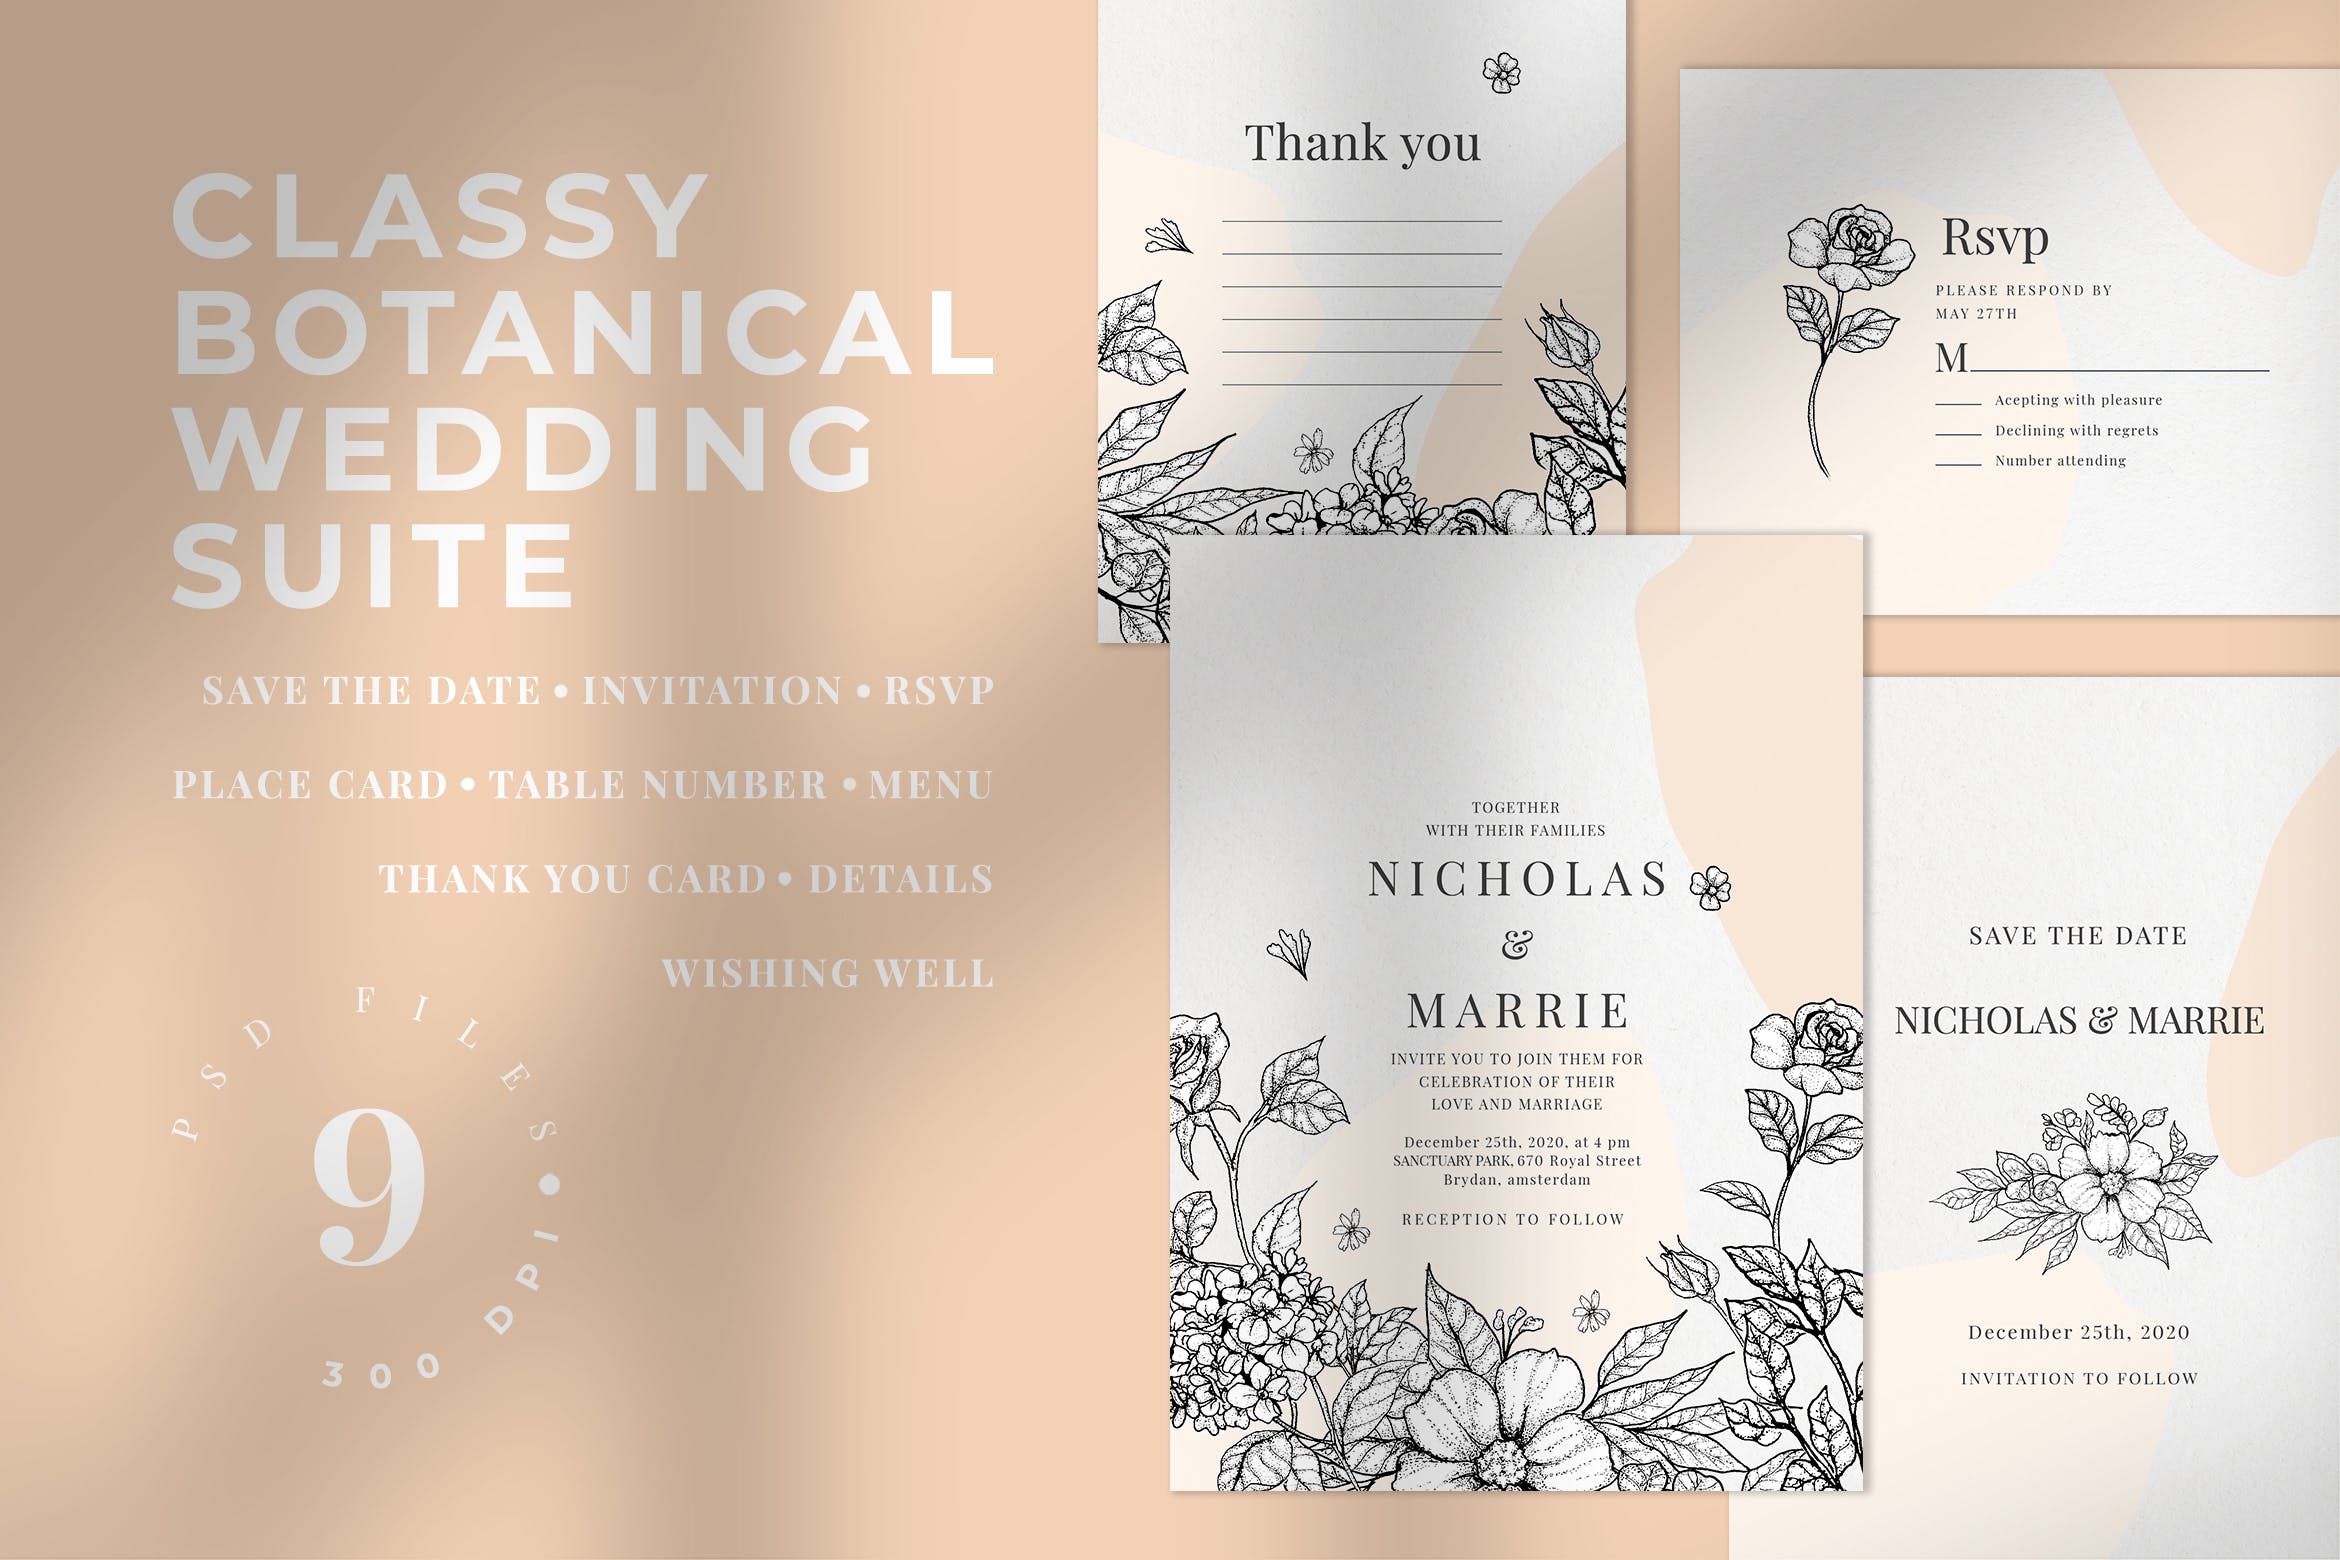 优雅素色花卉手绘图案婚礼邀请设计套件 Classy Botanical Wedding Suite插图